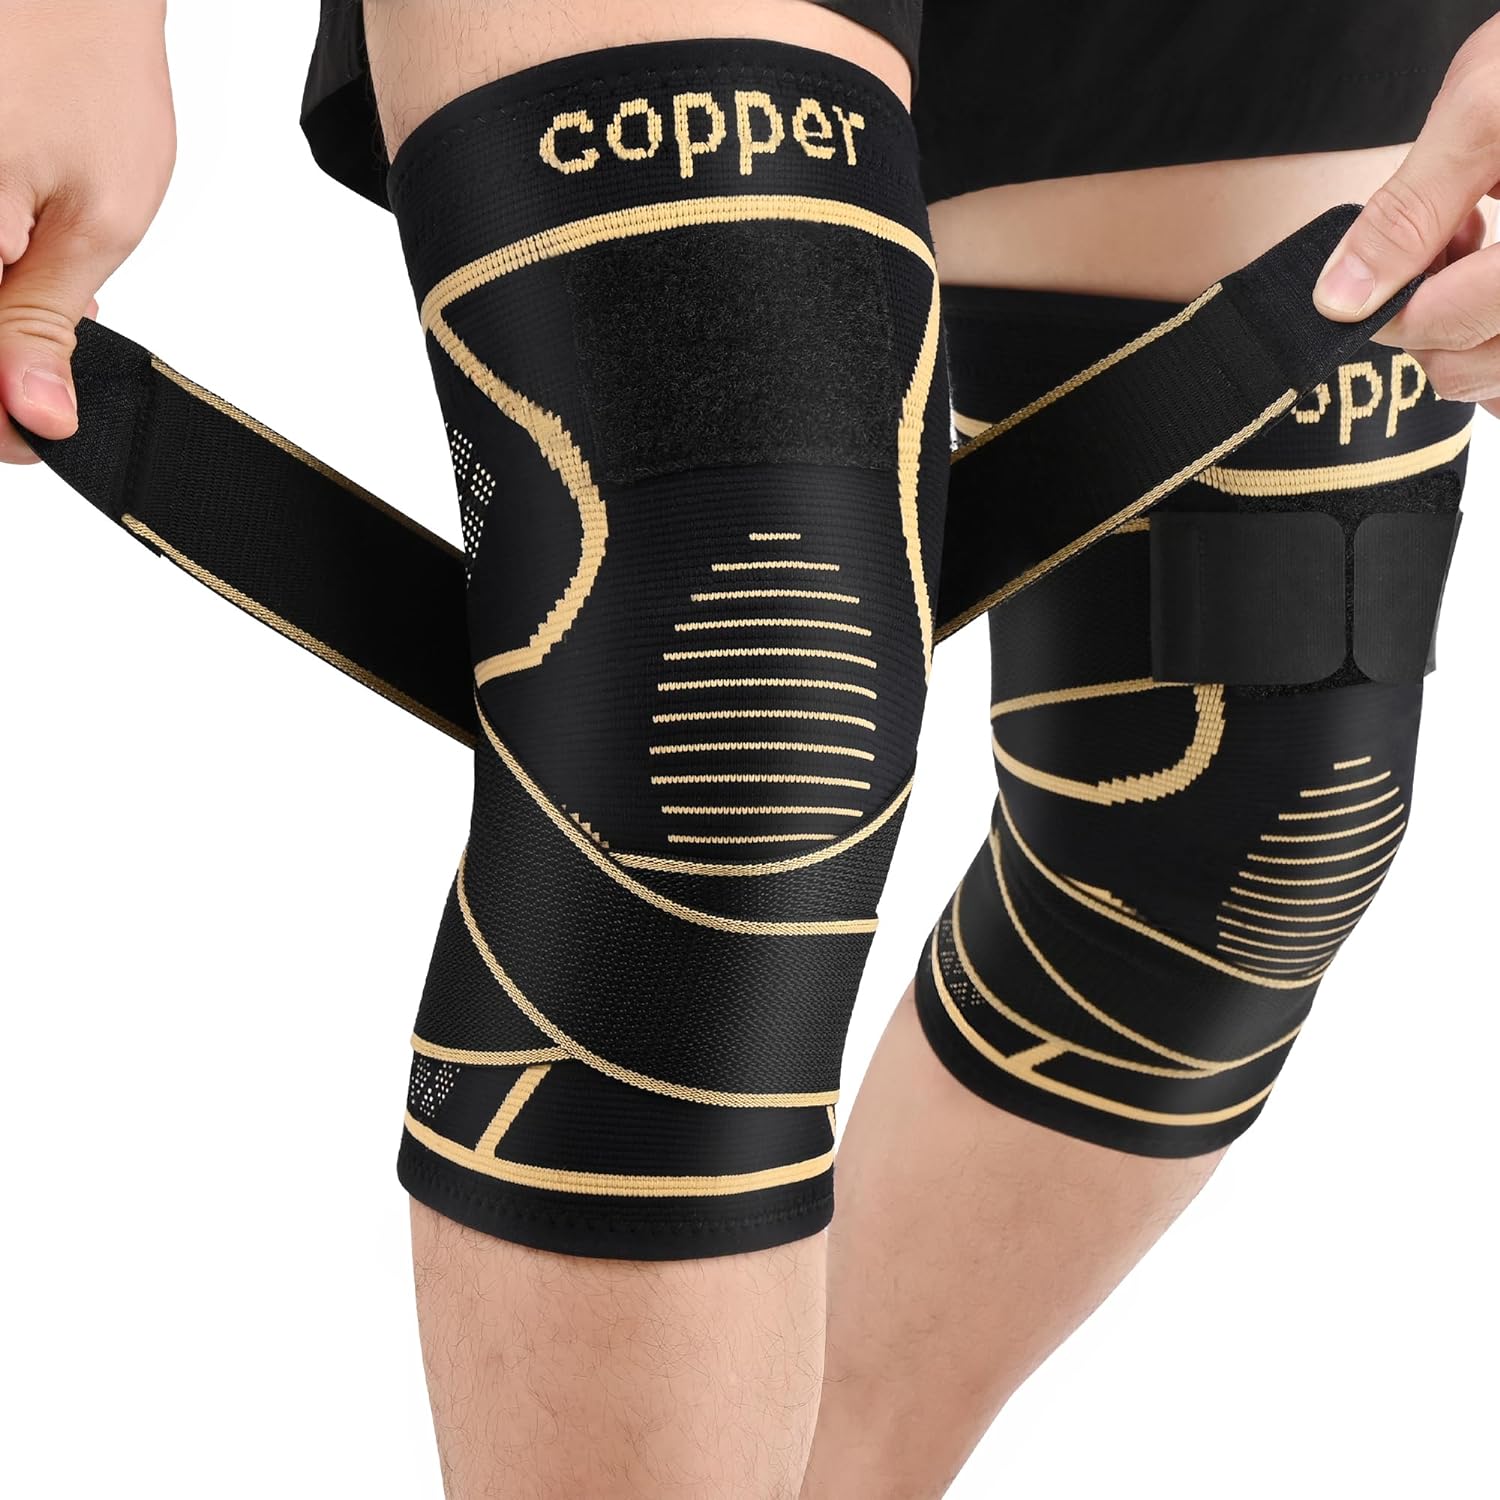 JHVW Copper Knee Braces Review